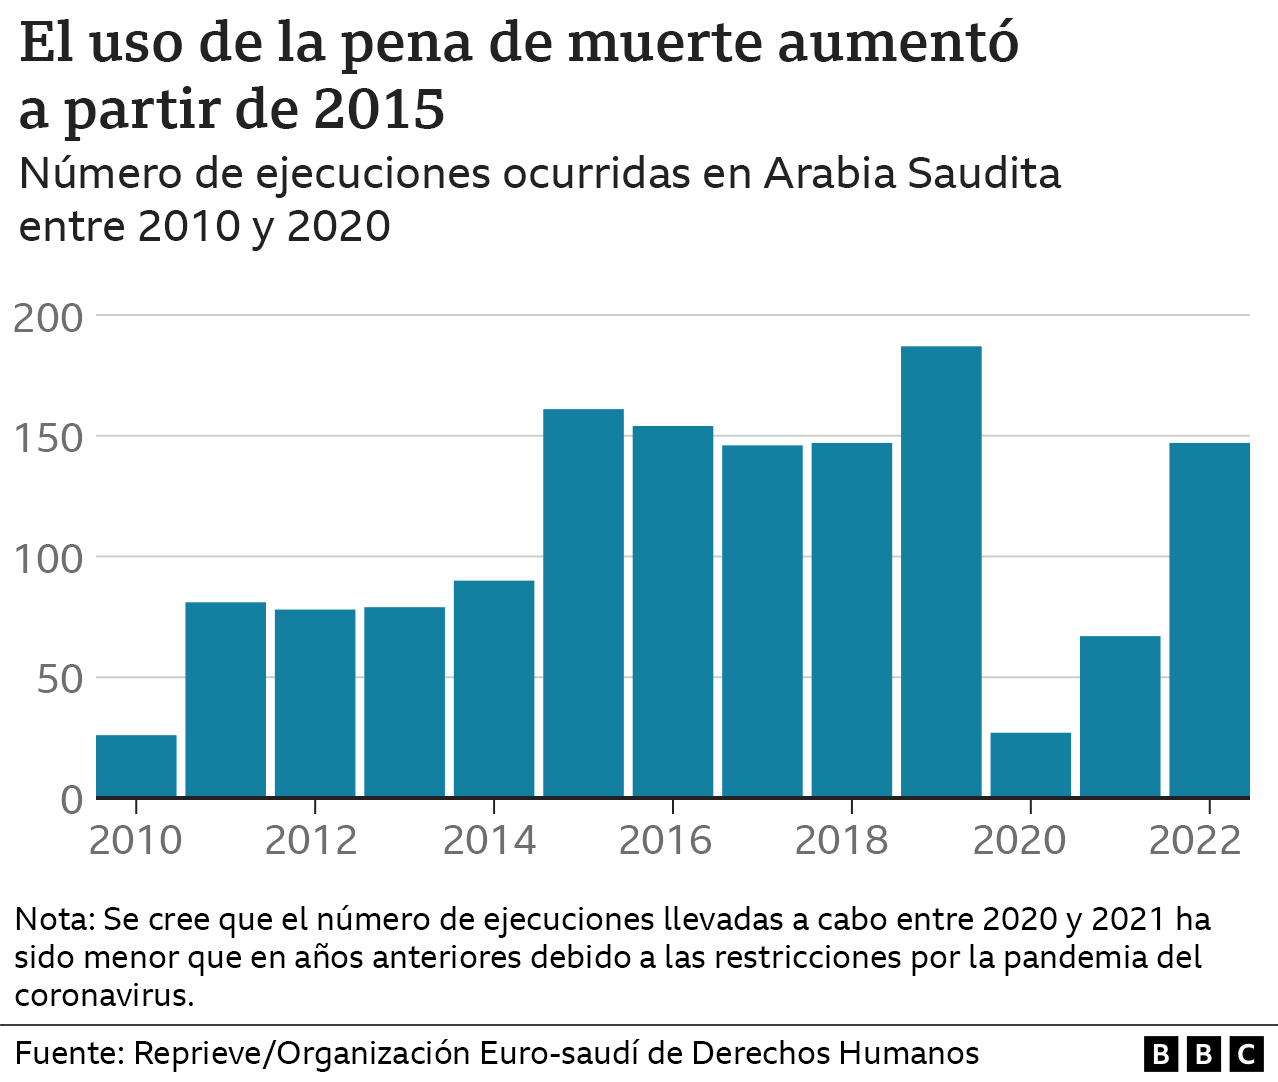 Gráfico con las ejecuciones desde 2010 a 2022 en Arabia Saudita.